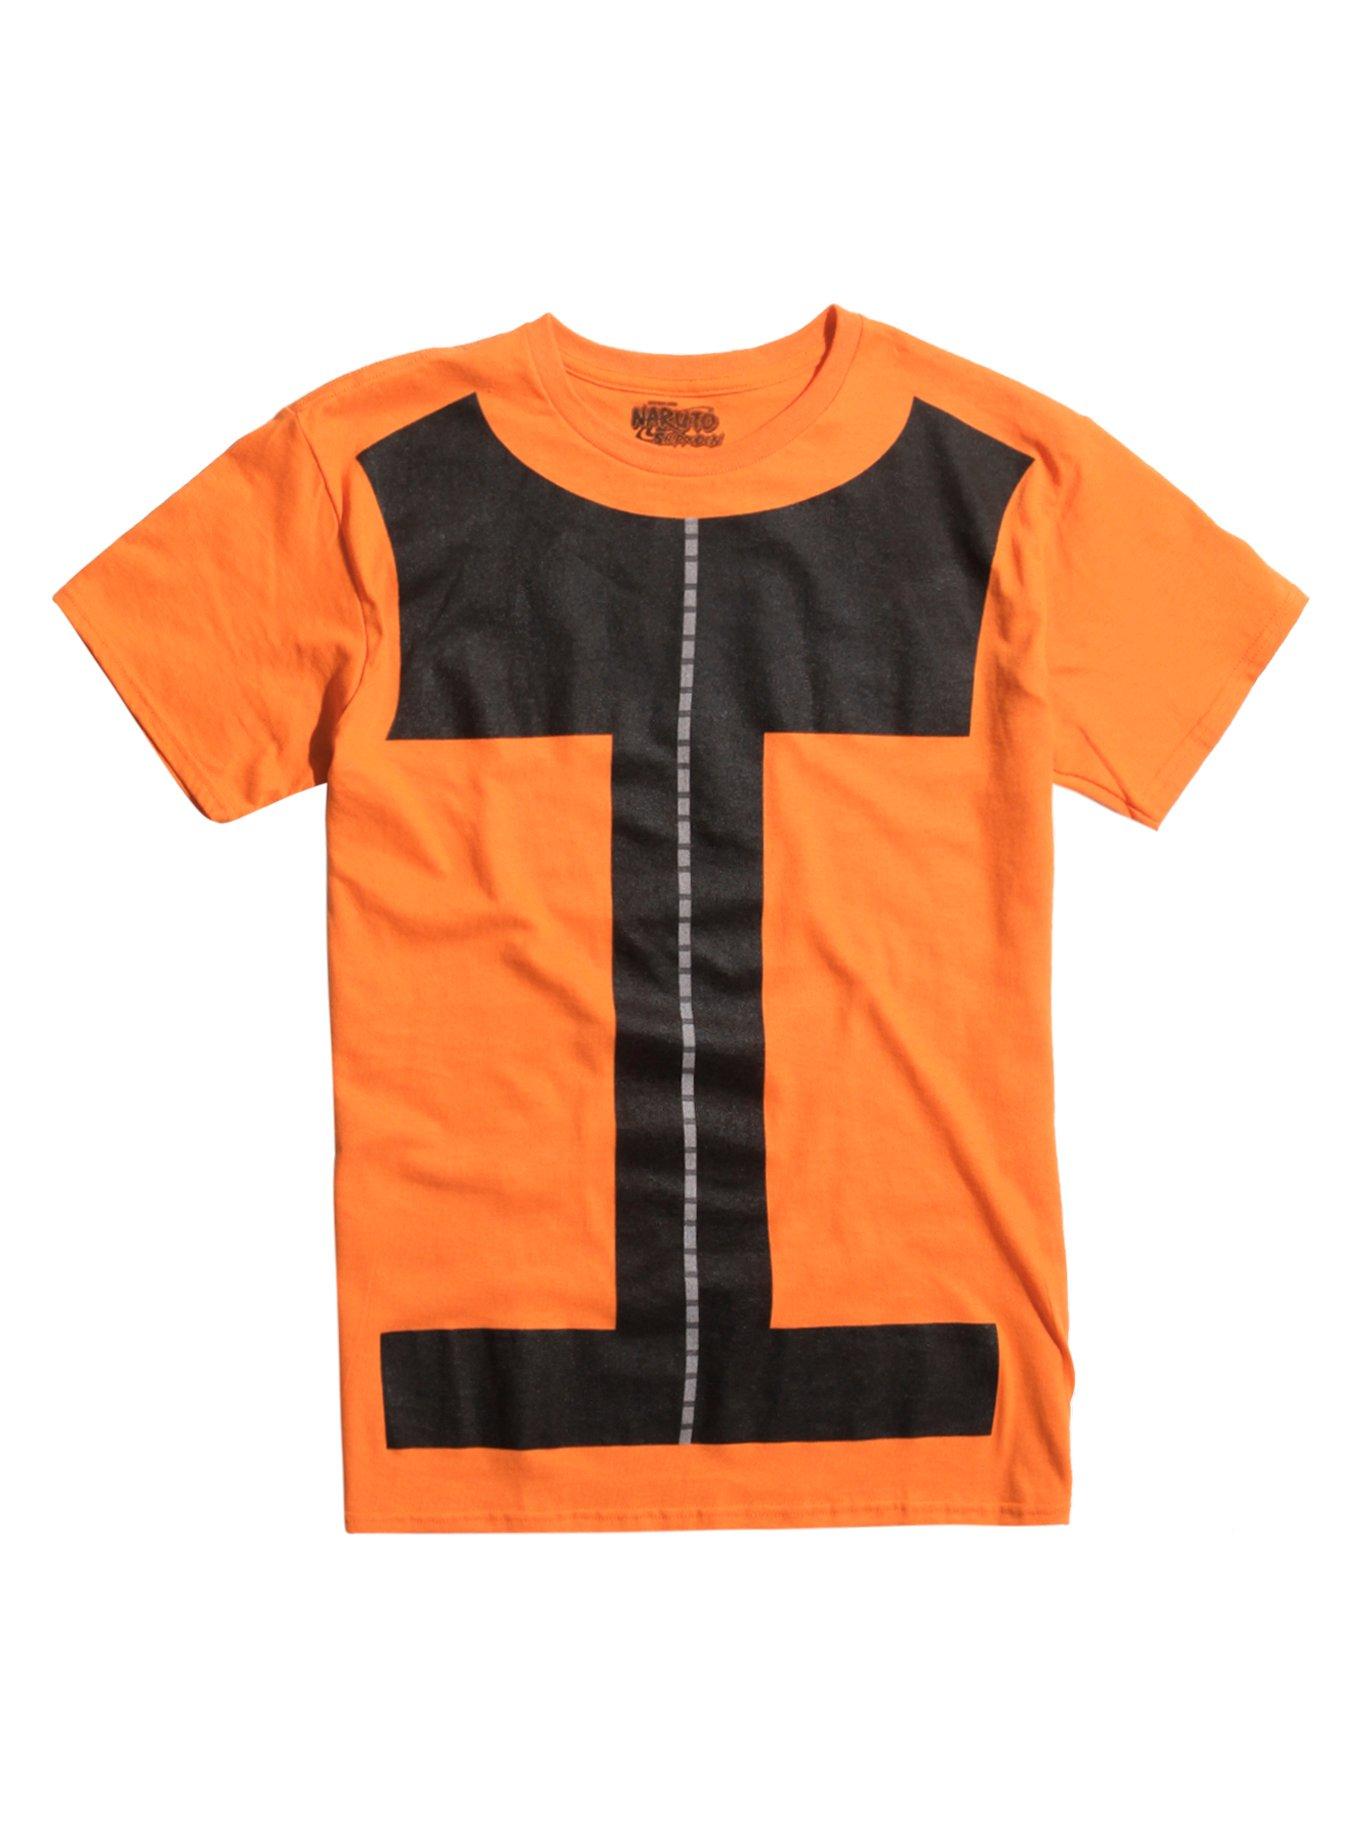 Naruto Shippuden Naruto Cosplay T-Shirt, MULTI, hi-res